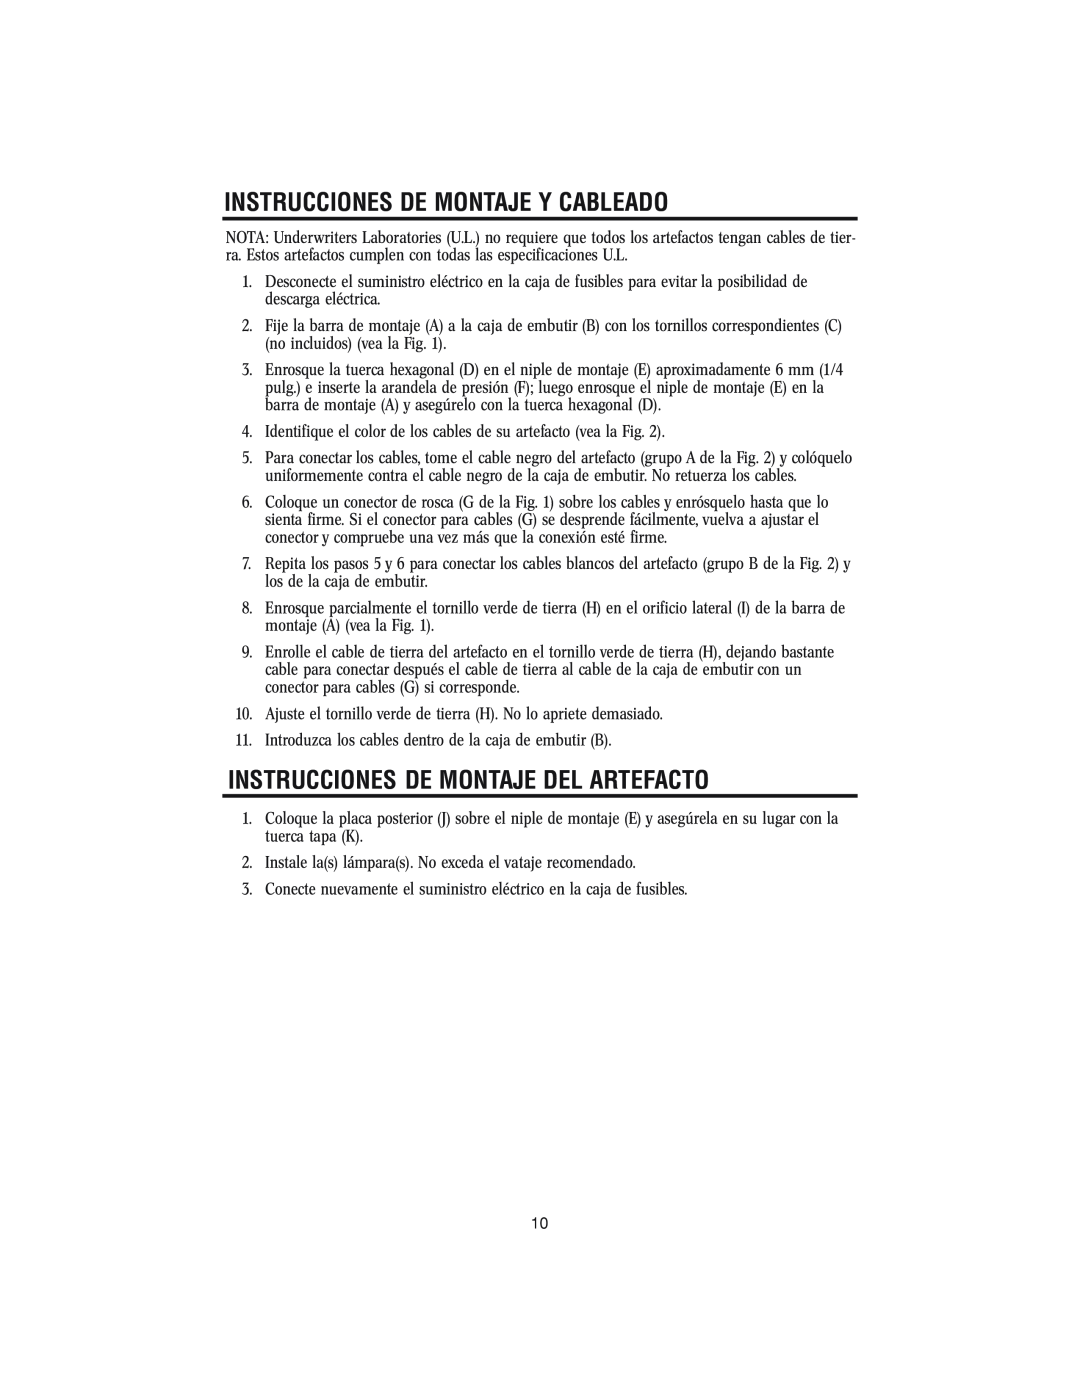 Westinghouse w-143 owner manual Instrucciones De Montaje Y Cableado, Instrucciones De Montaje Del Artefacto 